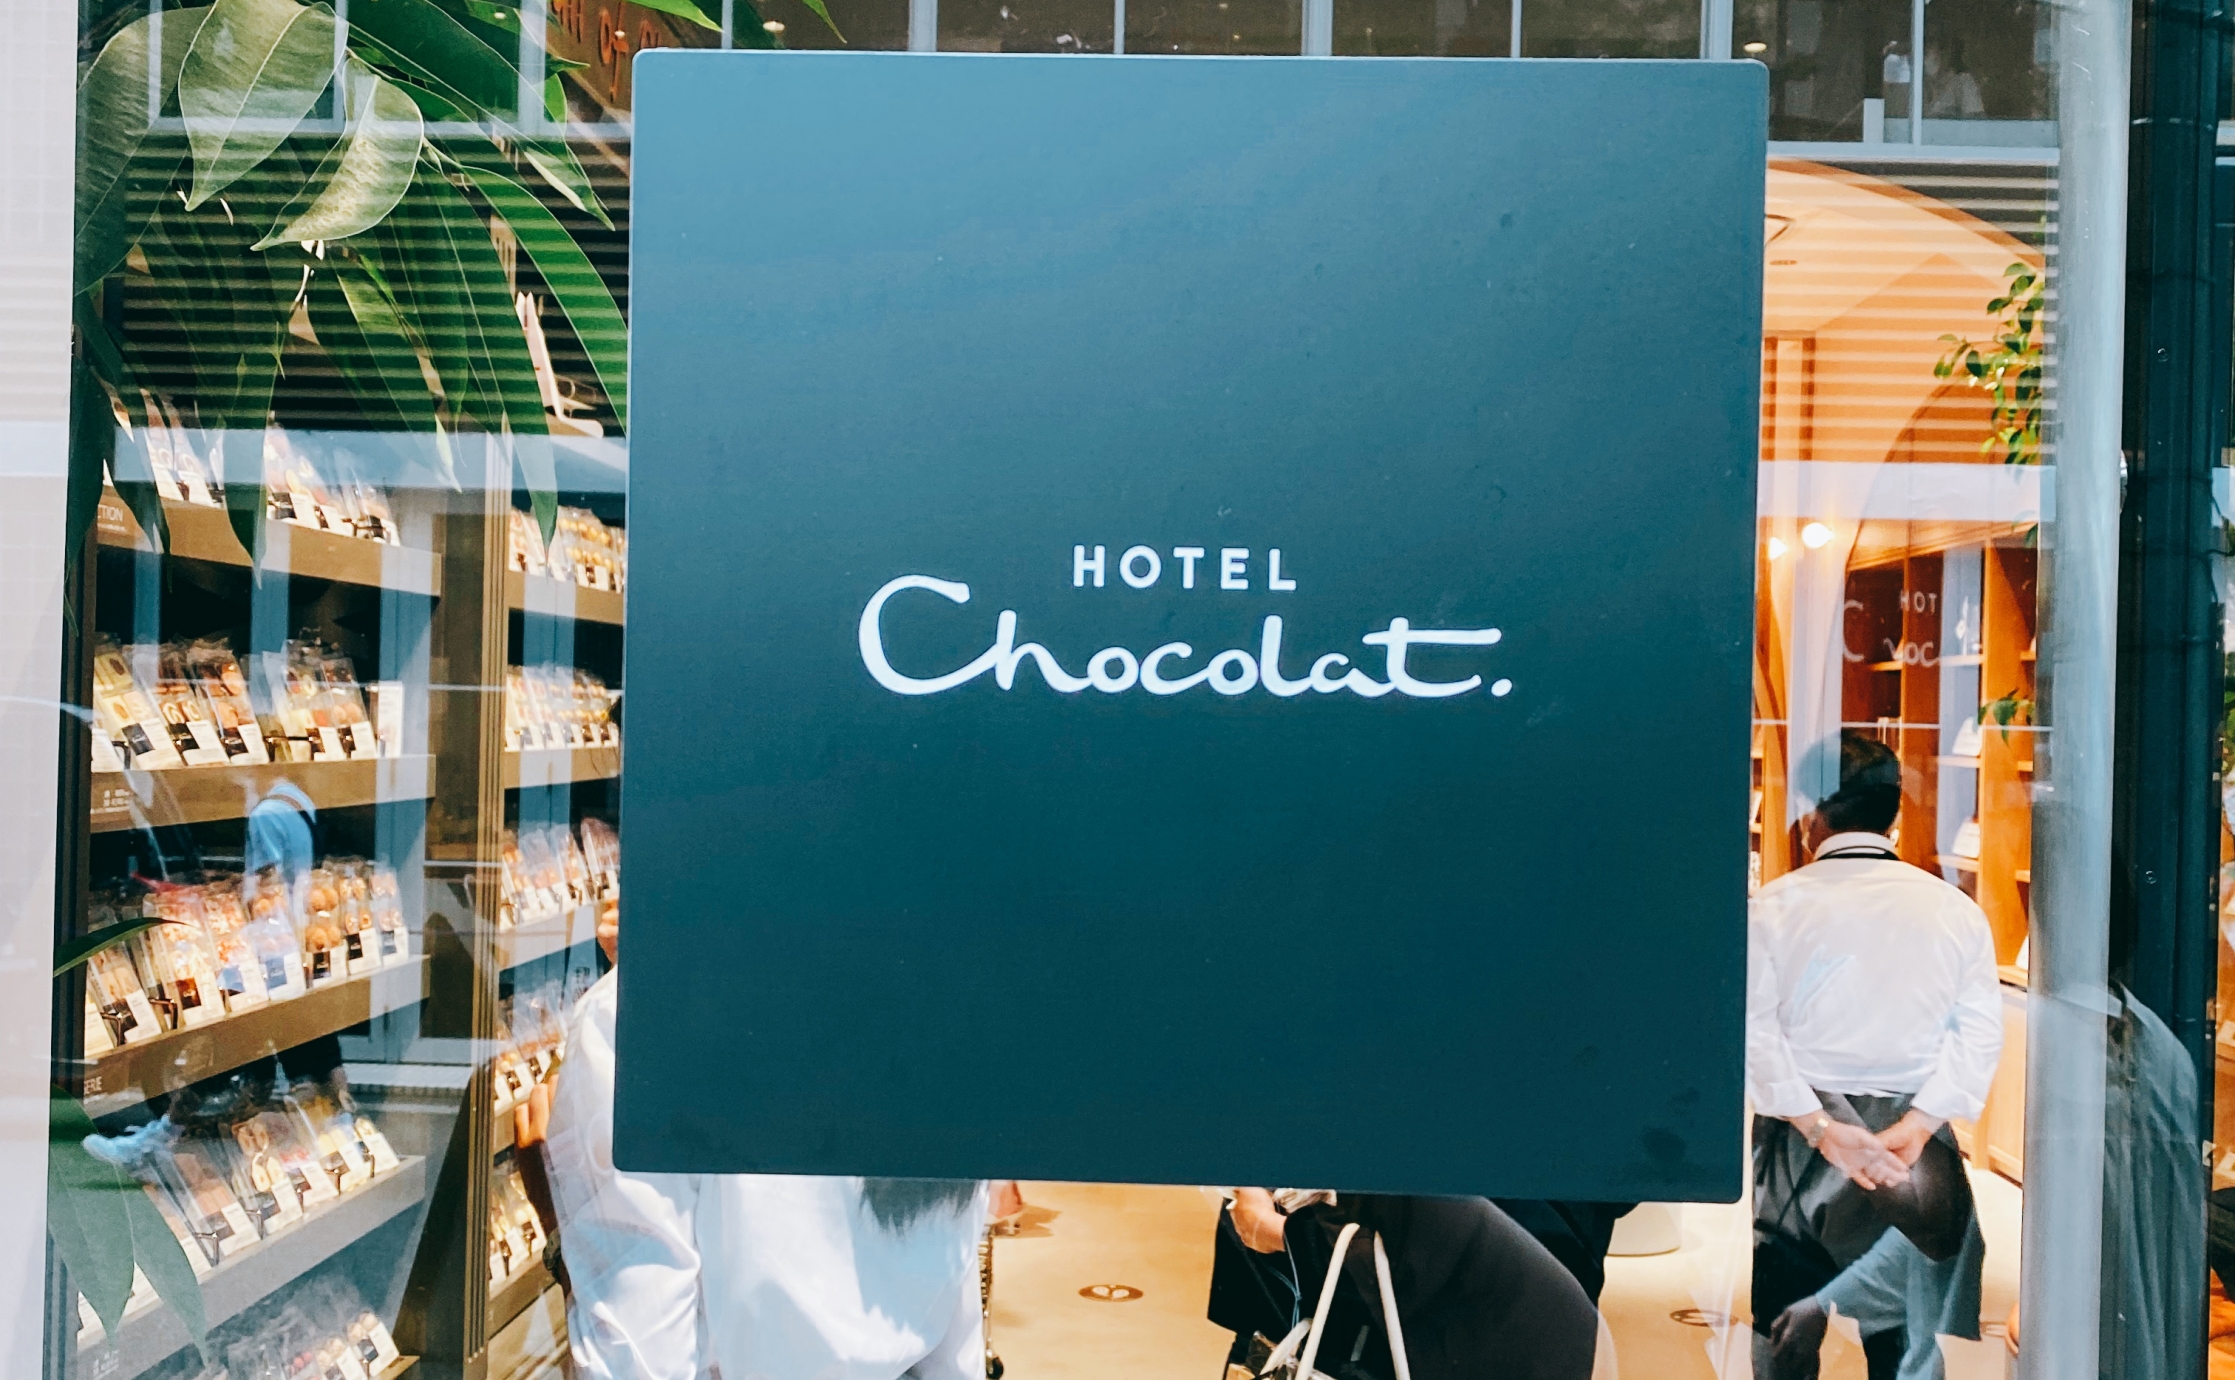 チョコレート好き必見?&quot;Hotel chocolat&quot;オープンしました。